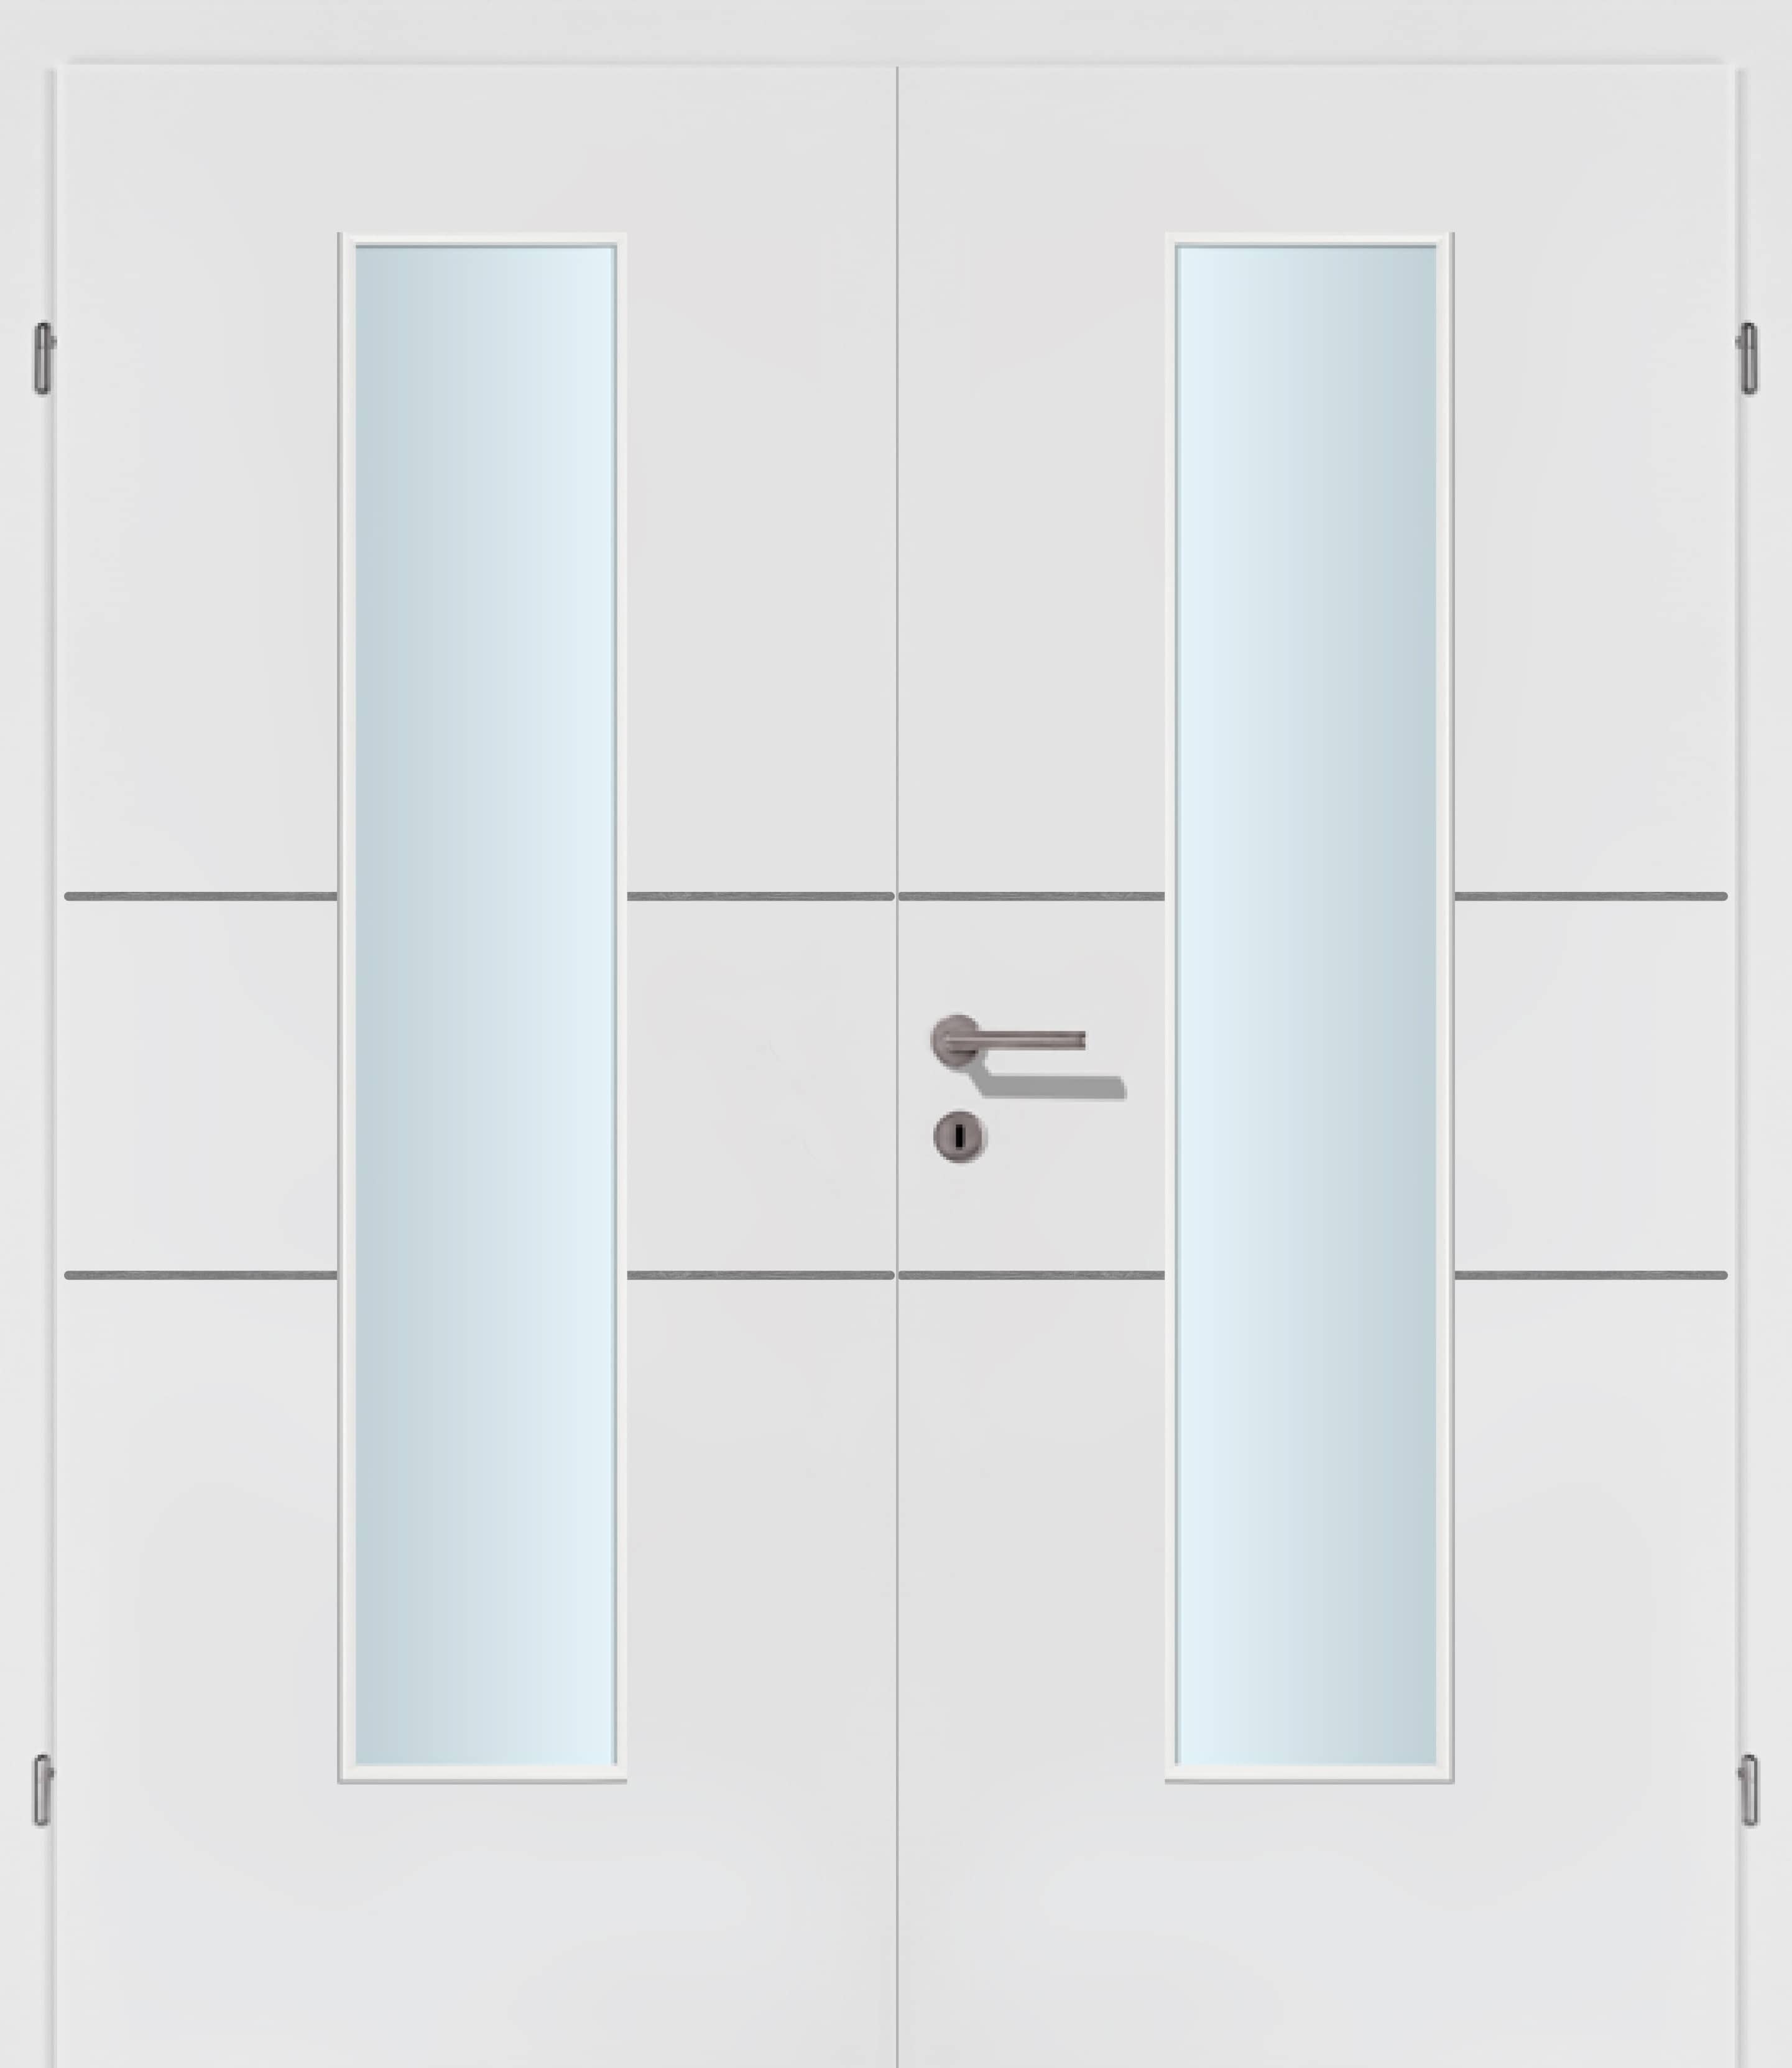 Selektion T41 Alu Effekt Lisenen weiss Innentür Inkl. Zarge (Türrahmen) Doppeltüre Inkl. Glaslichte EN Mittig